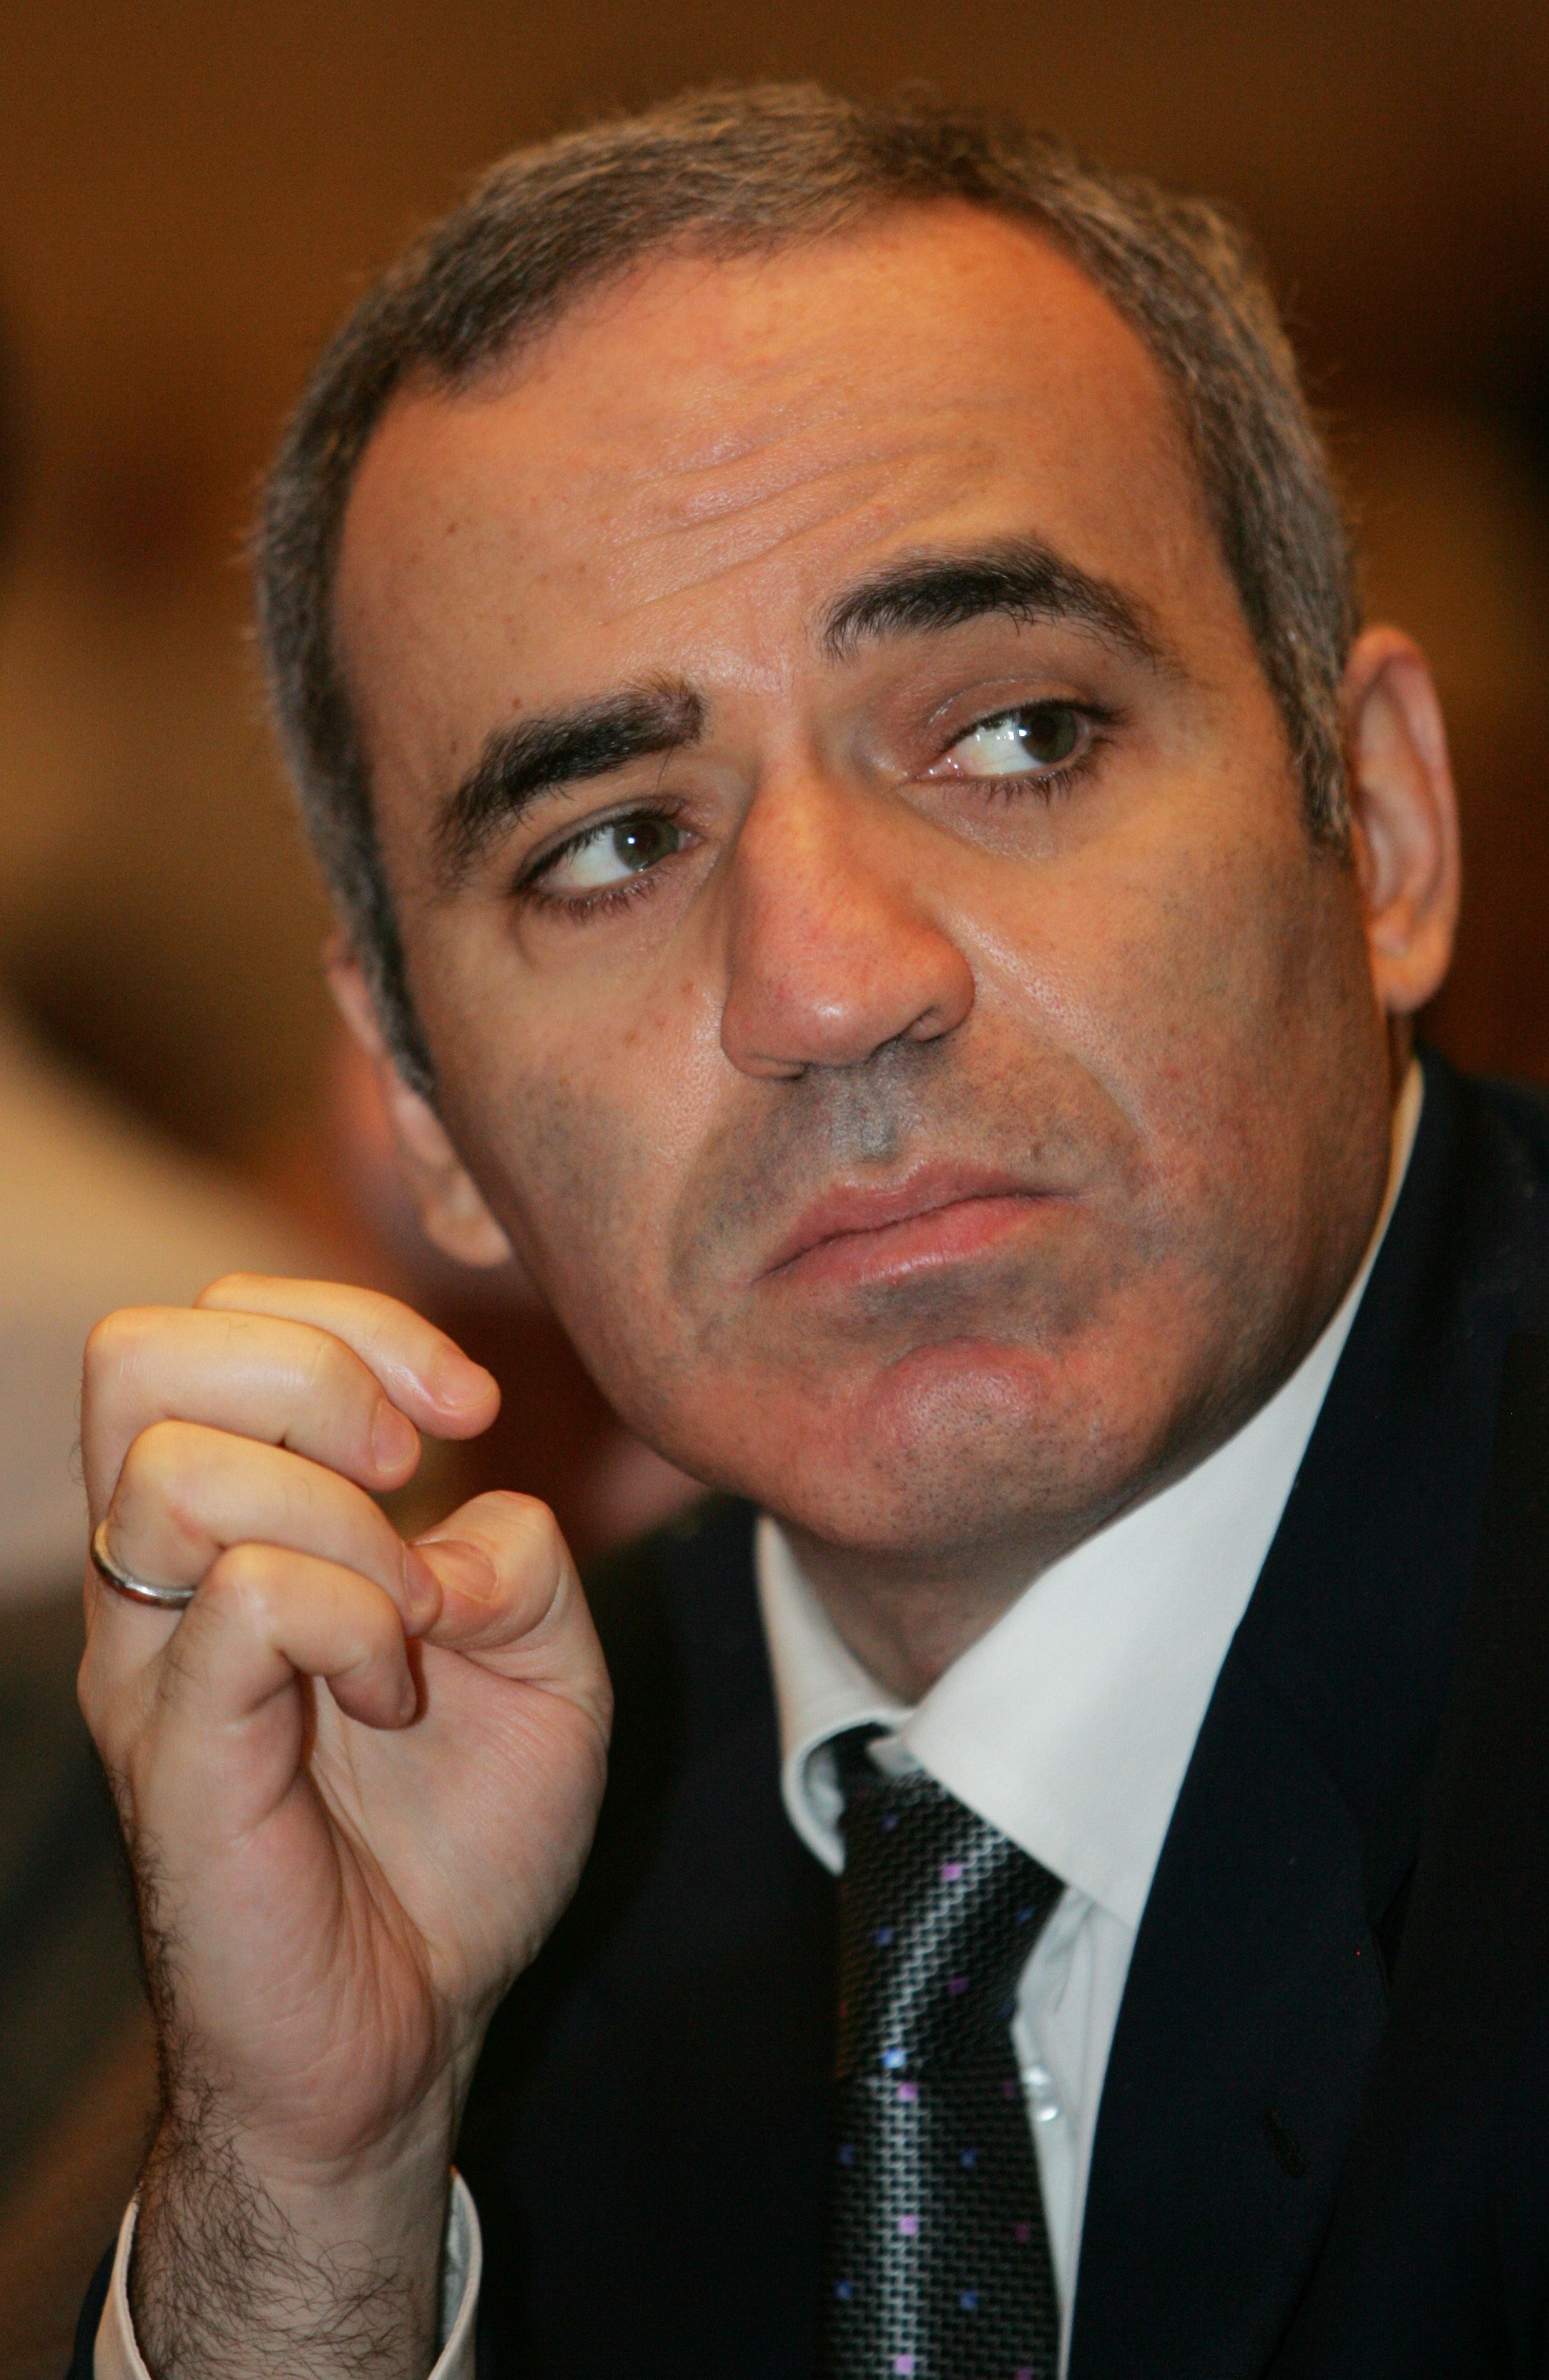 O Grandmaster de xadrez Garry Kasparov é um defensor do autoconhecimento,  além de ser escritor e ativista polít…